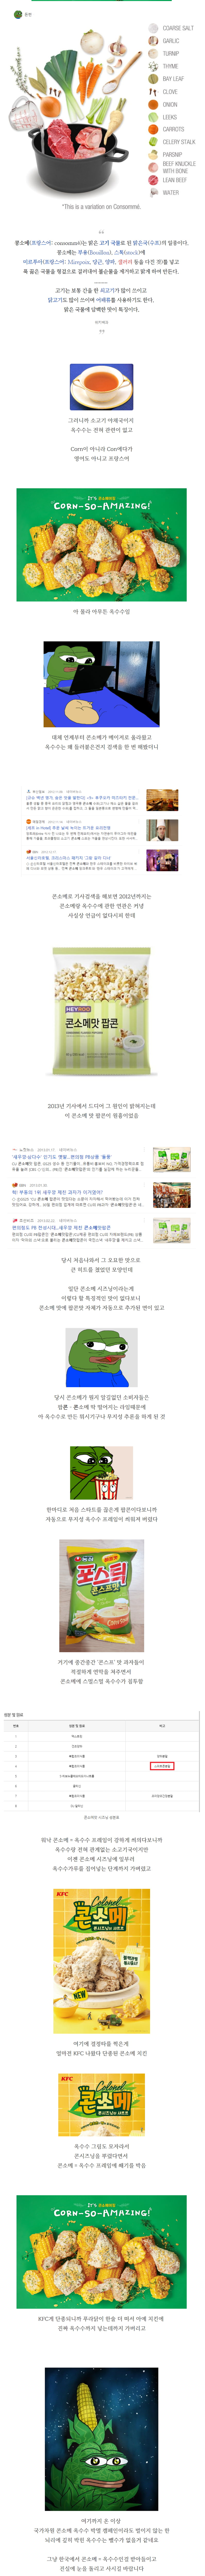 한국에서 왜곡당한 콘소메 맛의 진실